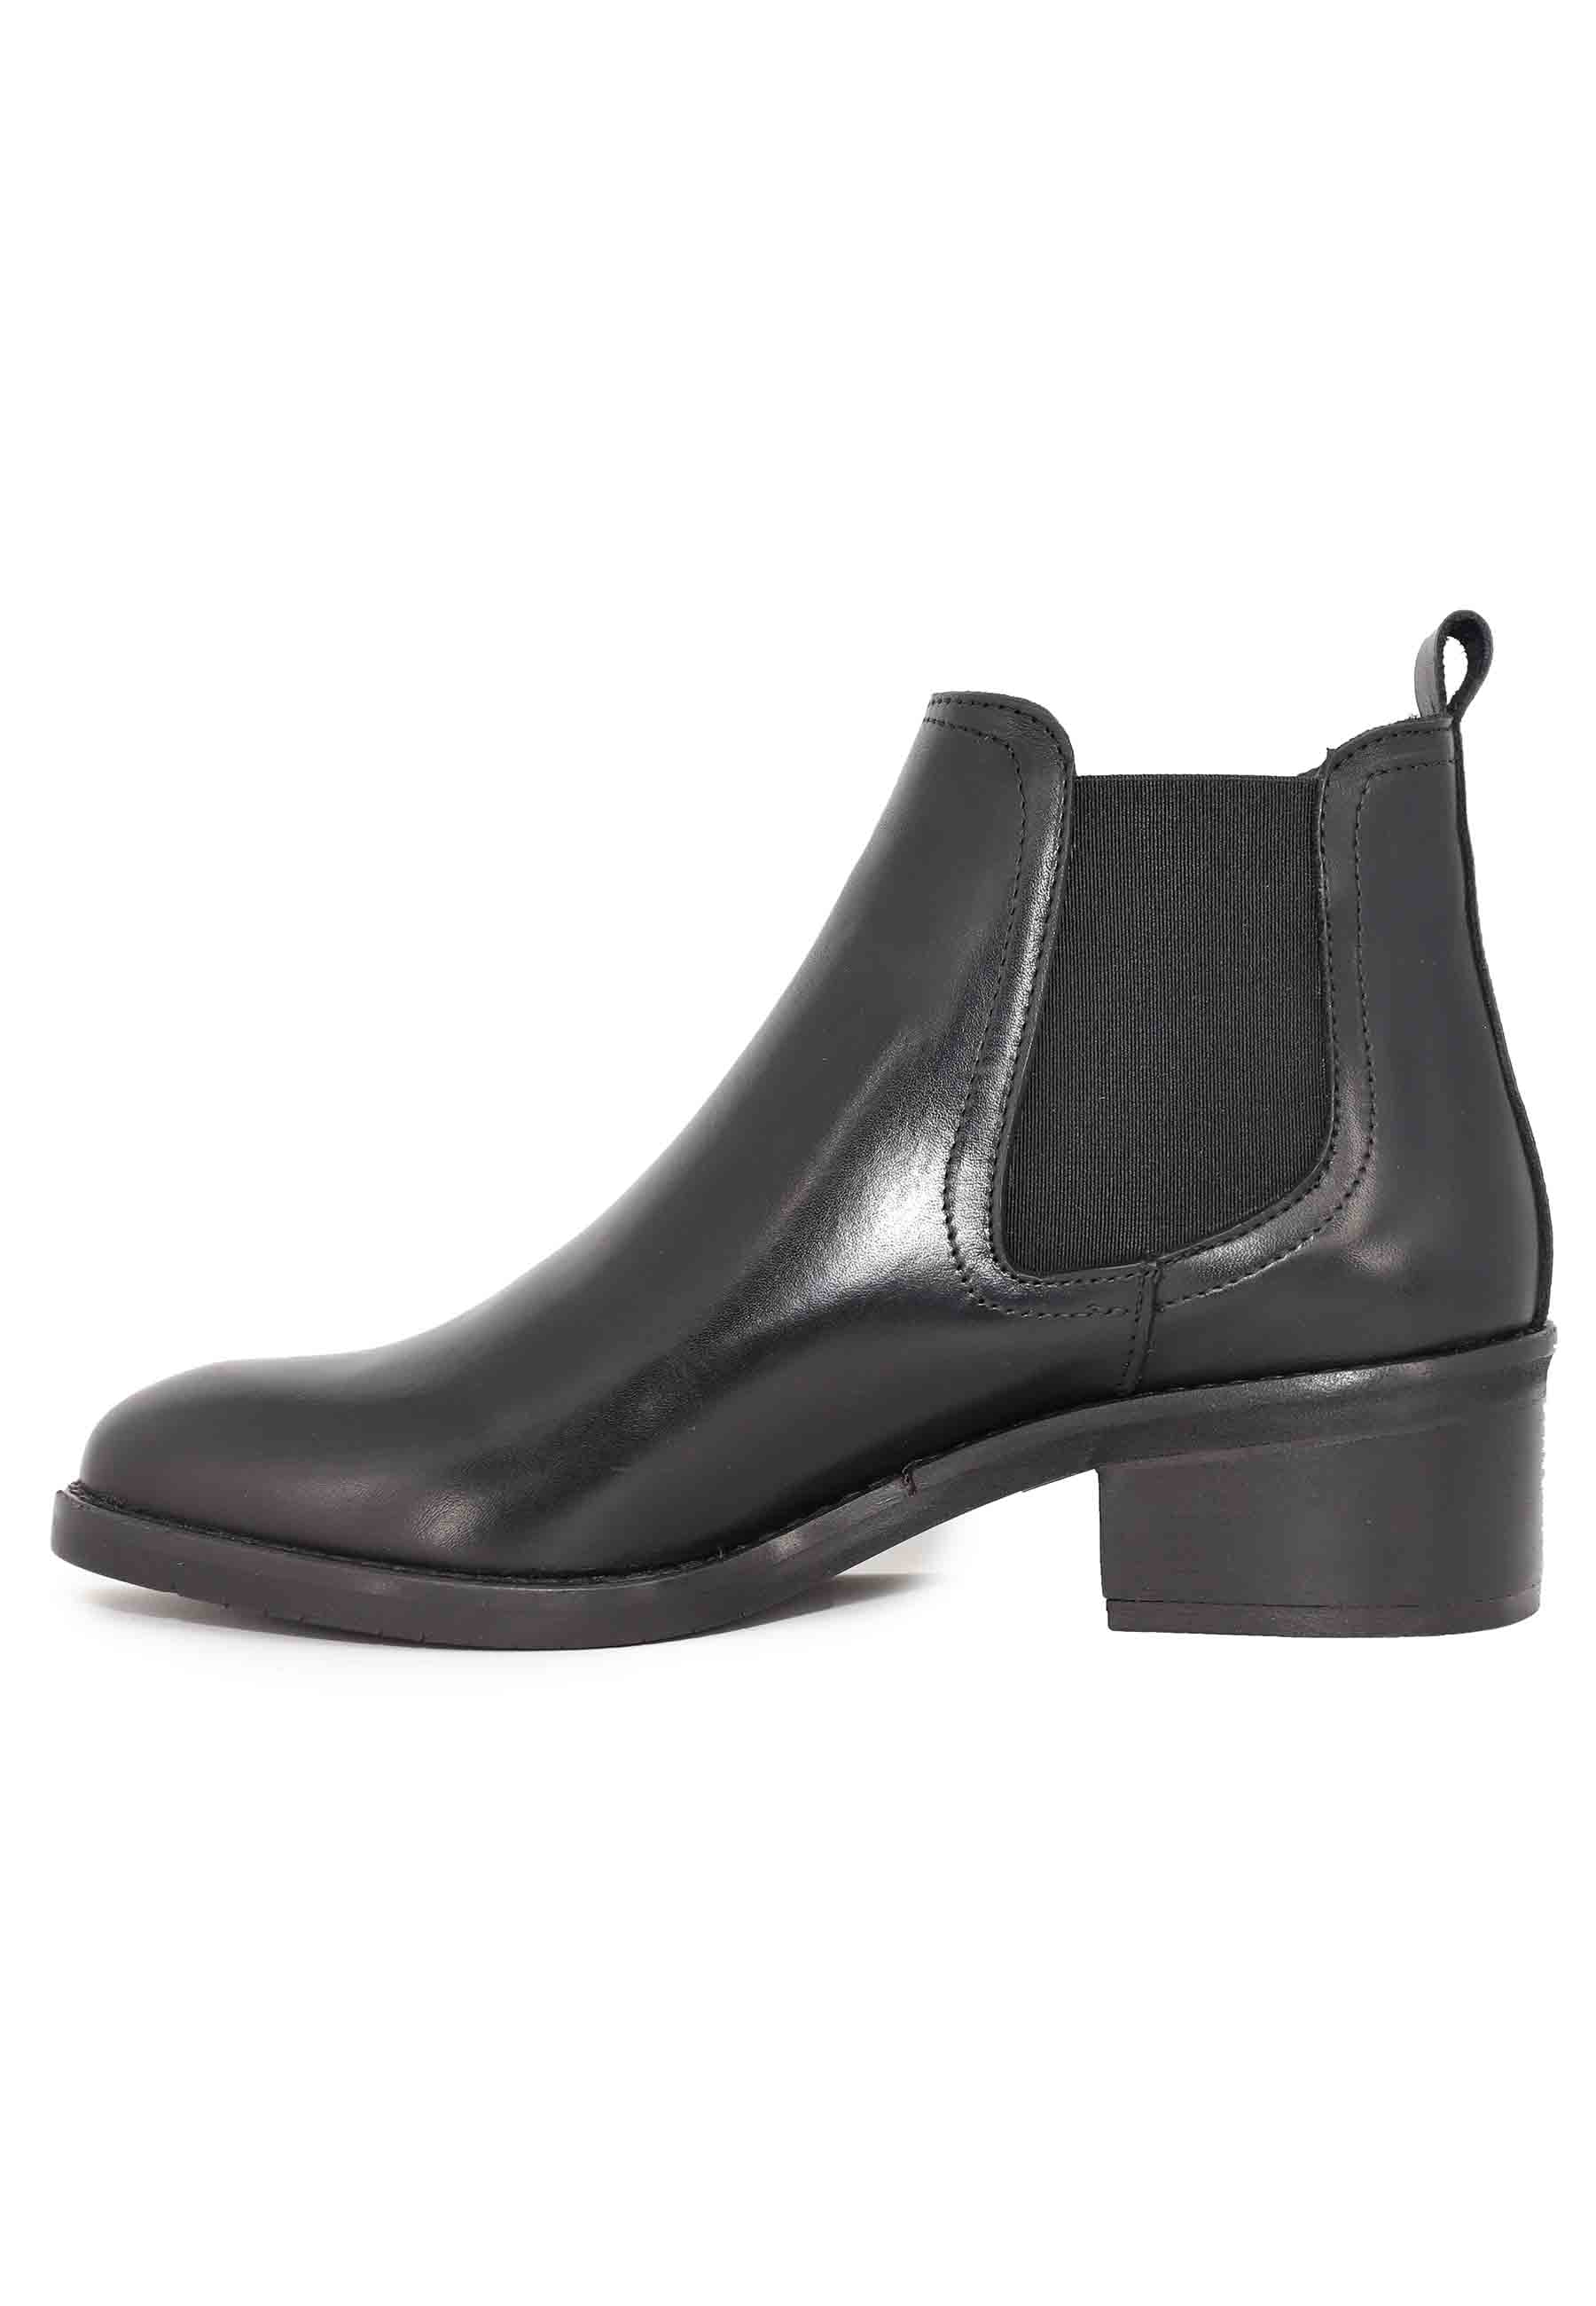 Stivaletti chelsea boot in pelle nera con punta tonda e tacco basso